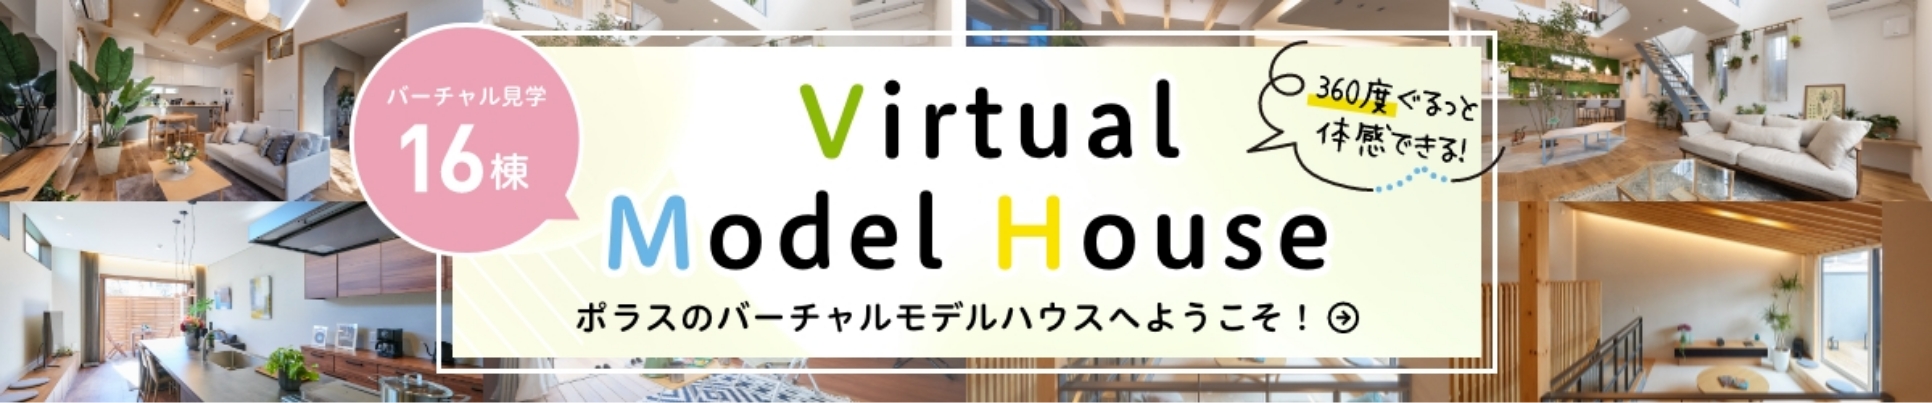 バーチャル見学16棟 Vitrual Model House ポラスのバーチャルモデルハウスへようこそ！ 360度ぐるっと体感できる！